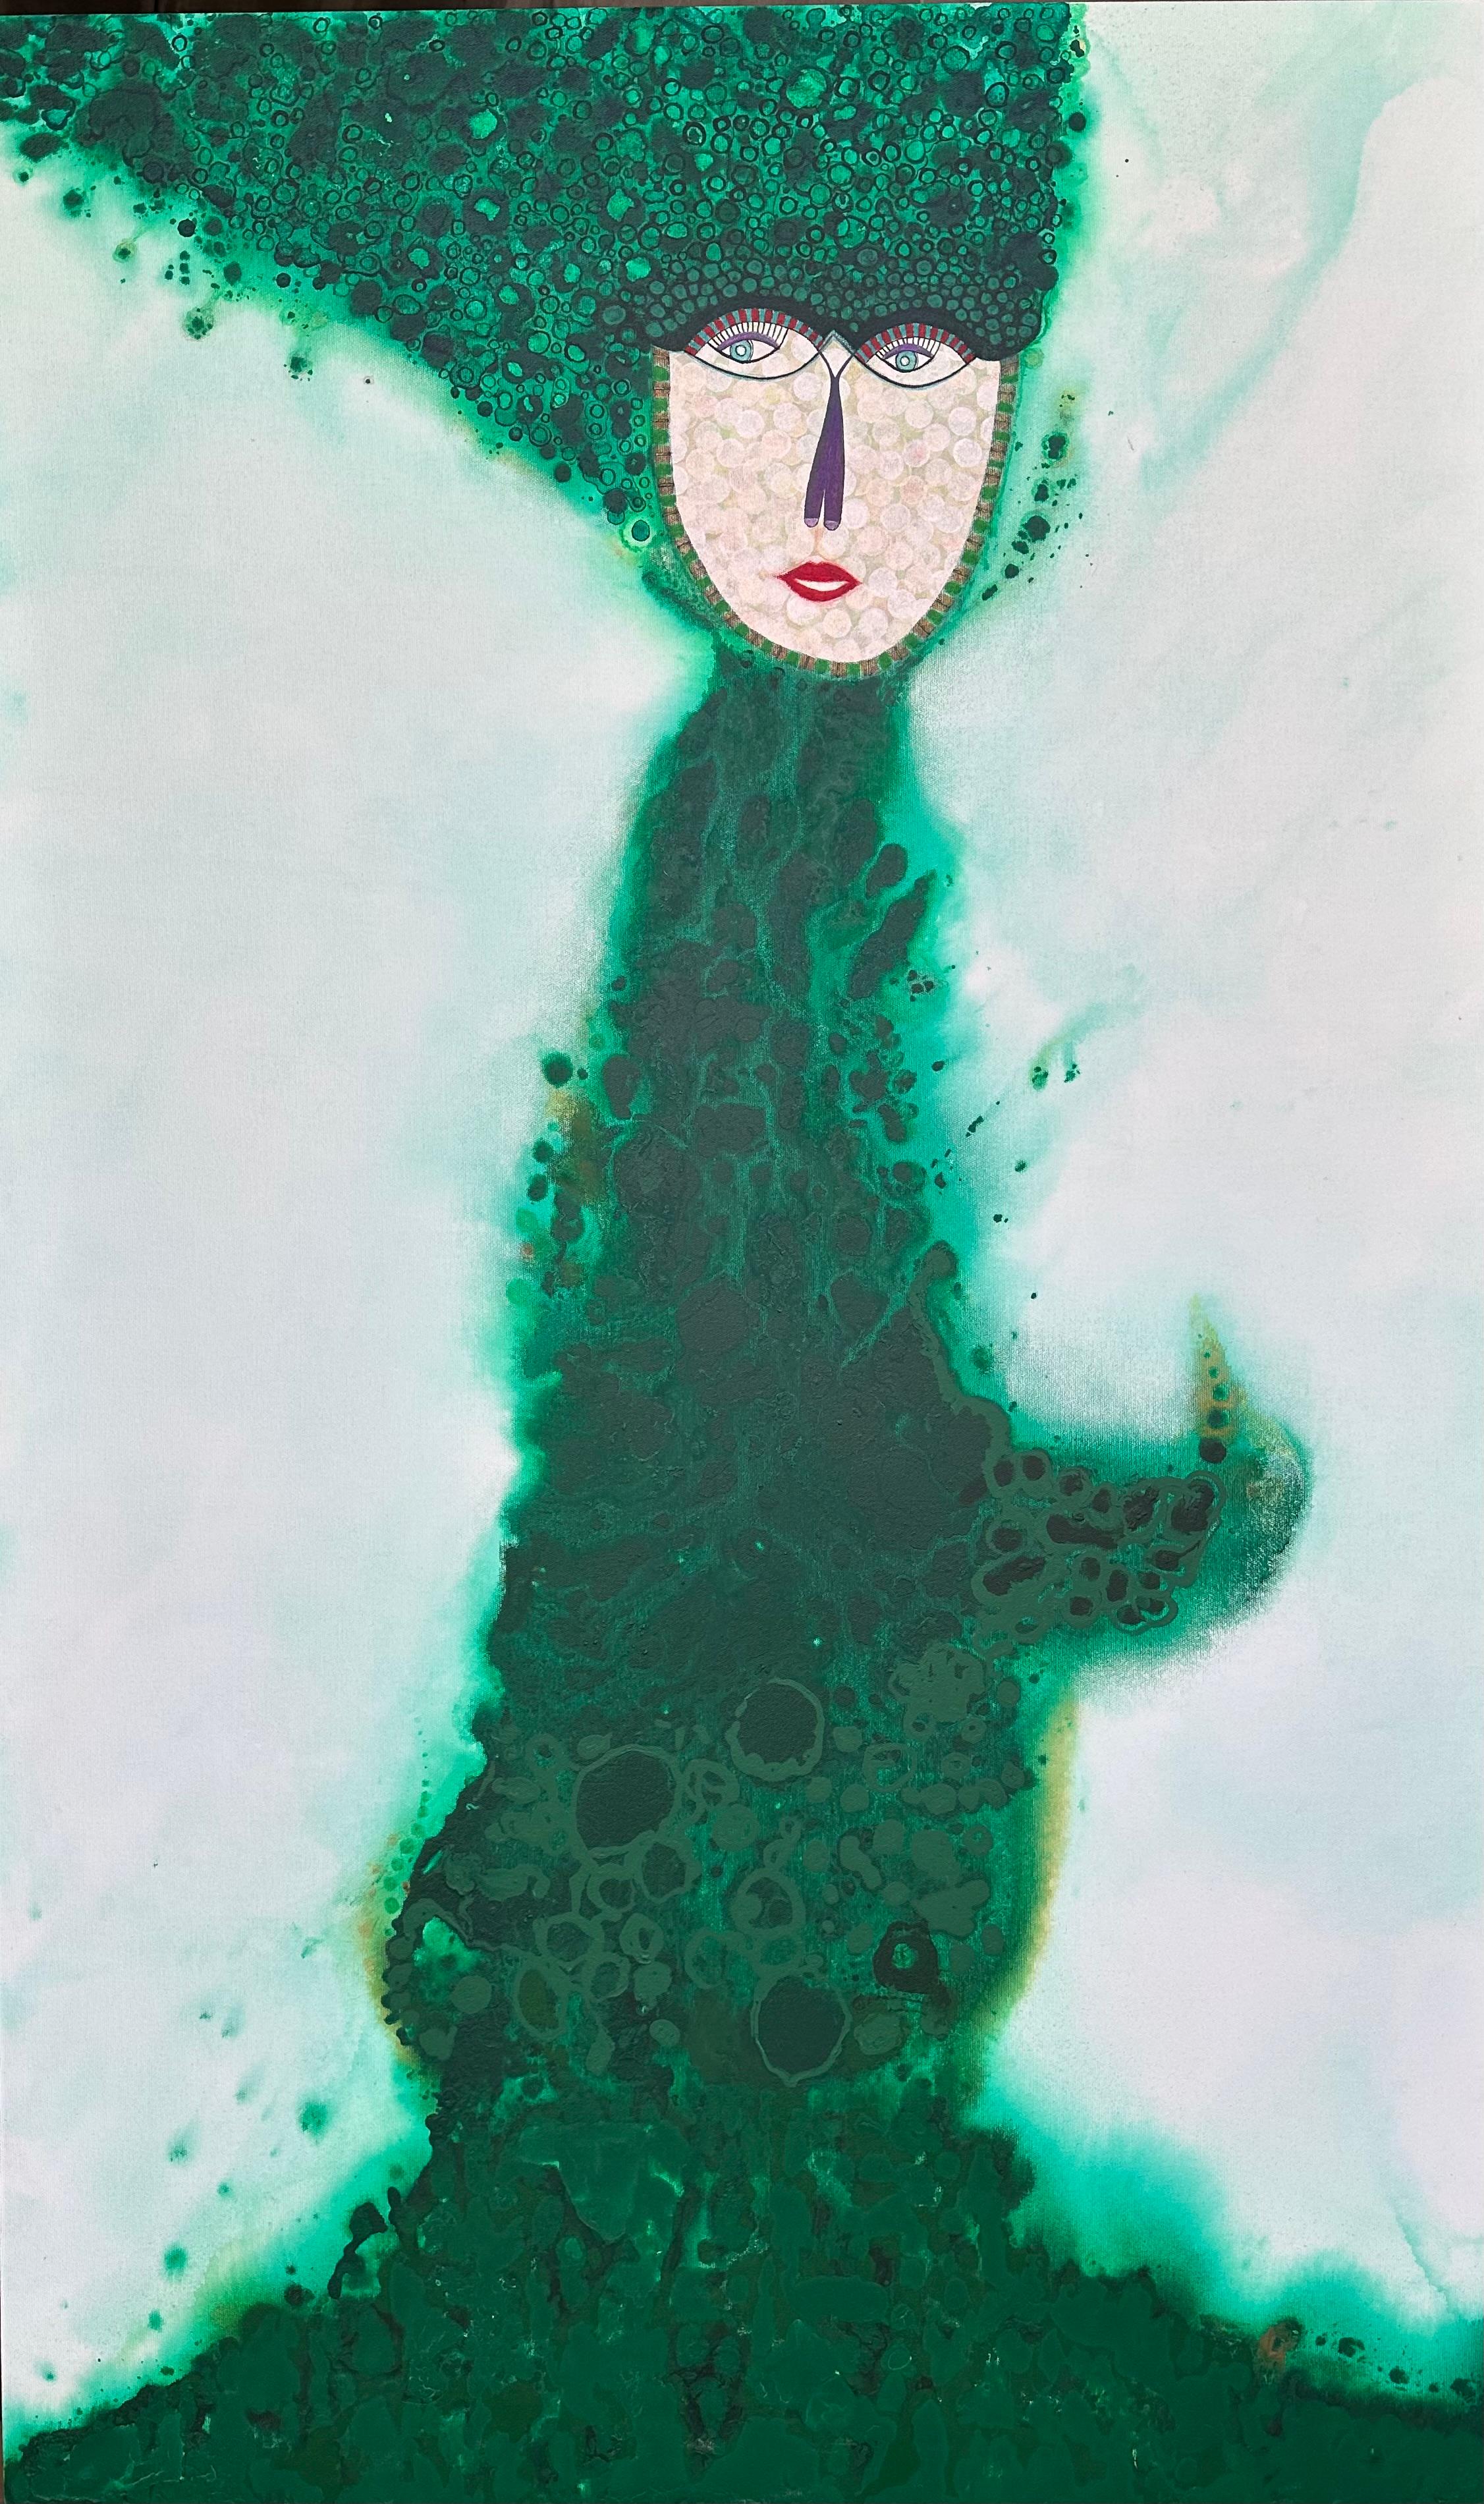 Figuratives vibrierendes smaragdgrünes weibliches Porträt - großformatige zeitgenössische kubanische Kunst.

Dieses Stück ist ein Unikat und wird mit einem signierten Echtheitszertifikat des Künstlers geliefert.

Obwohl er international als einer